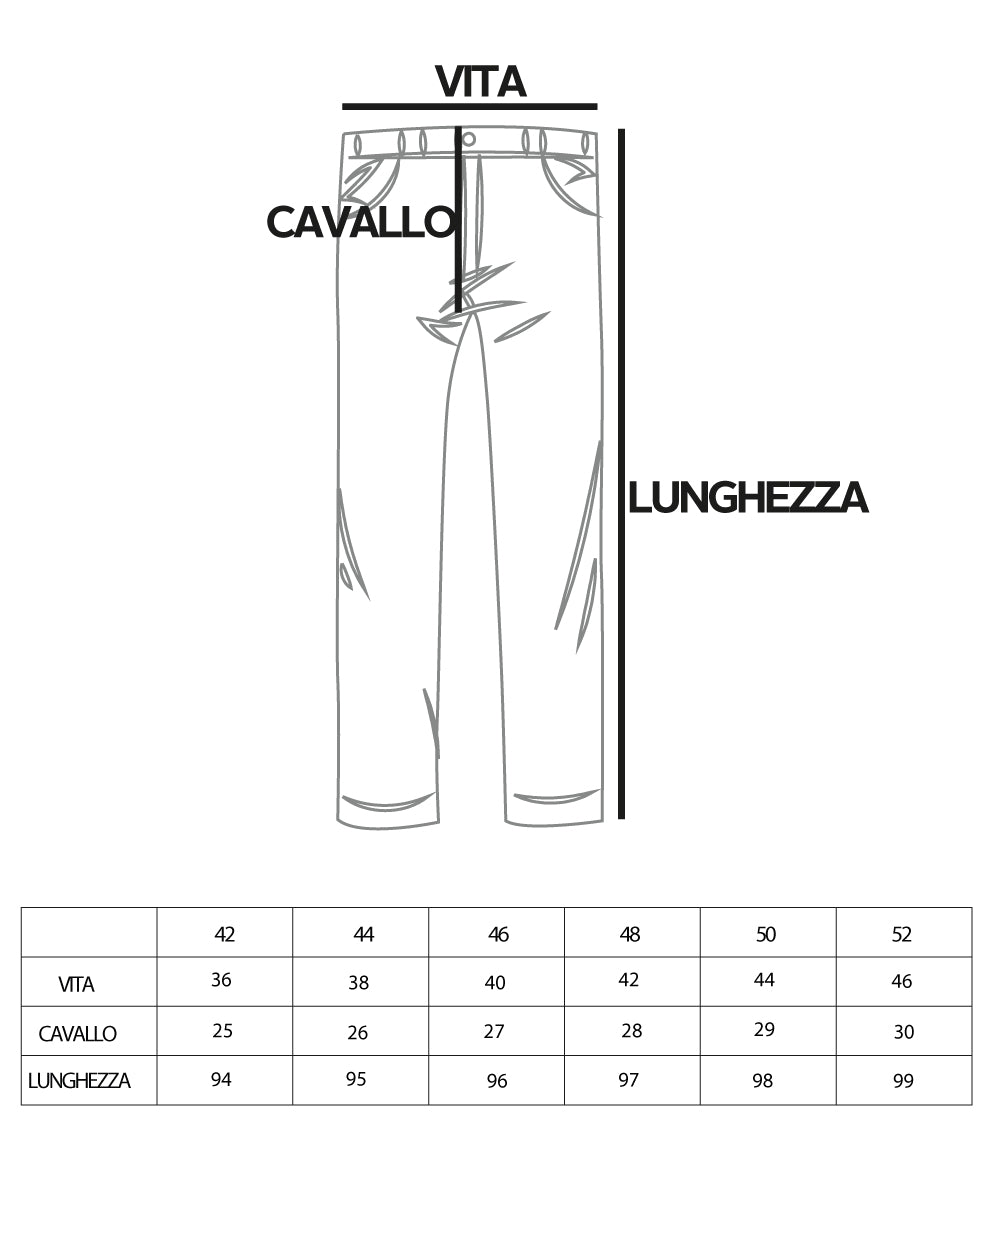 Pantaloni Uomo Cotone Tasca America Abbottonatura Allungata Capri Sartoriale Nero GIOSAL-P5685A